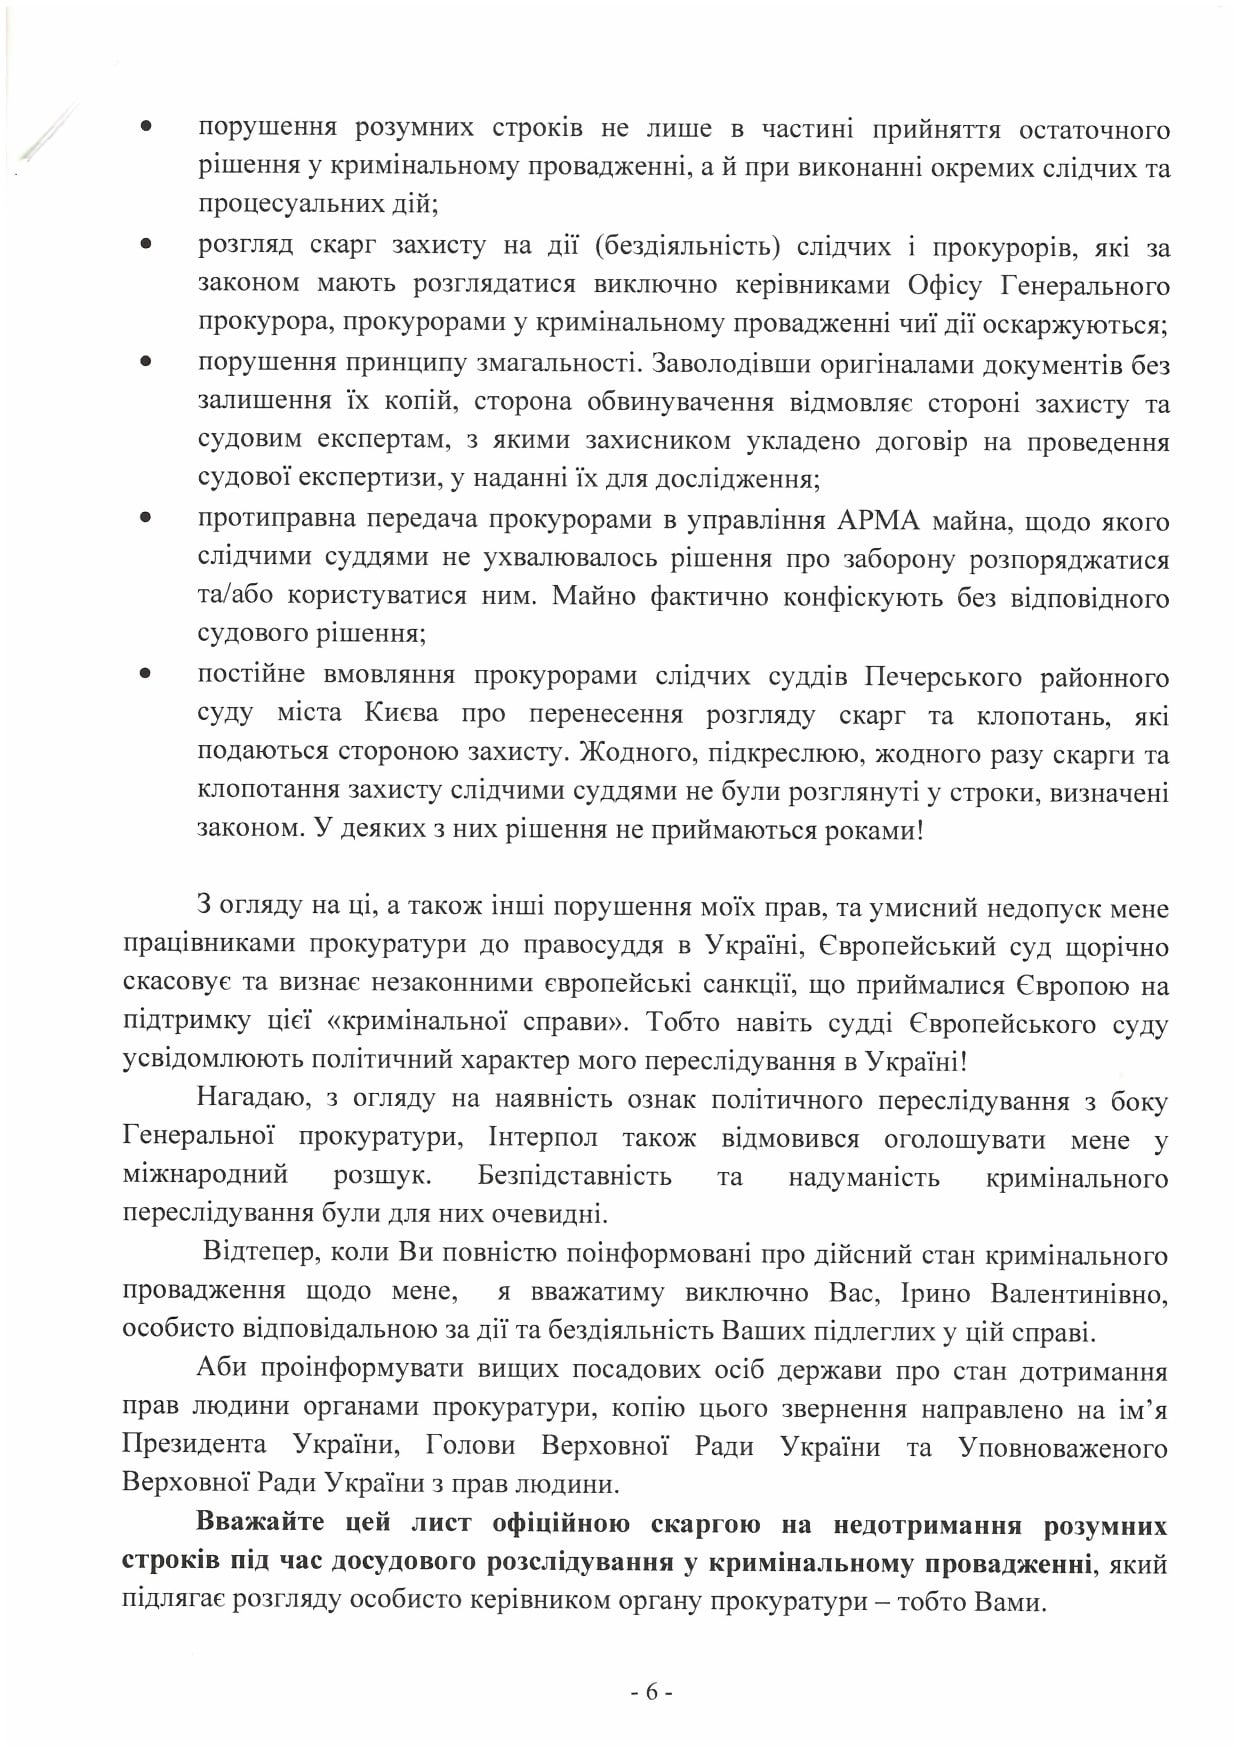 Сын Януковича в письме Венедиктовой пожаловался на прокуроров, которые ведут его дело о неуплате налогов